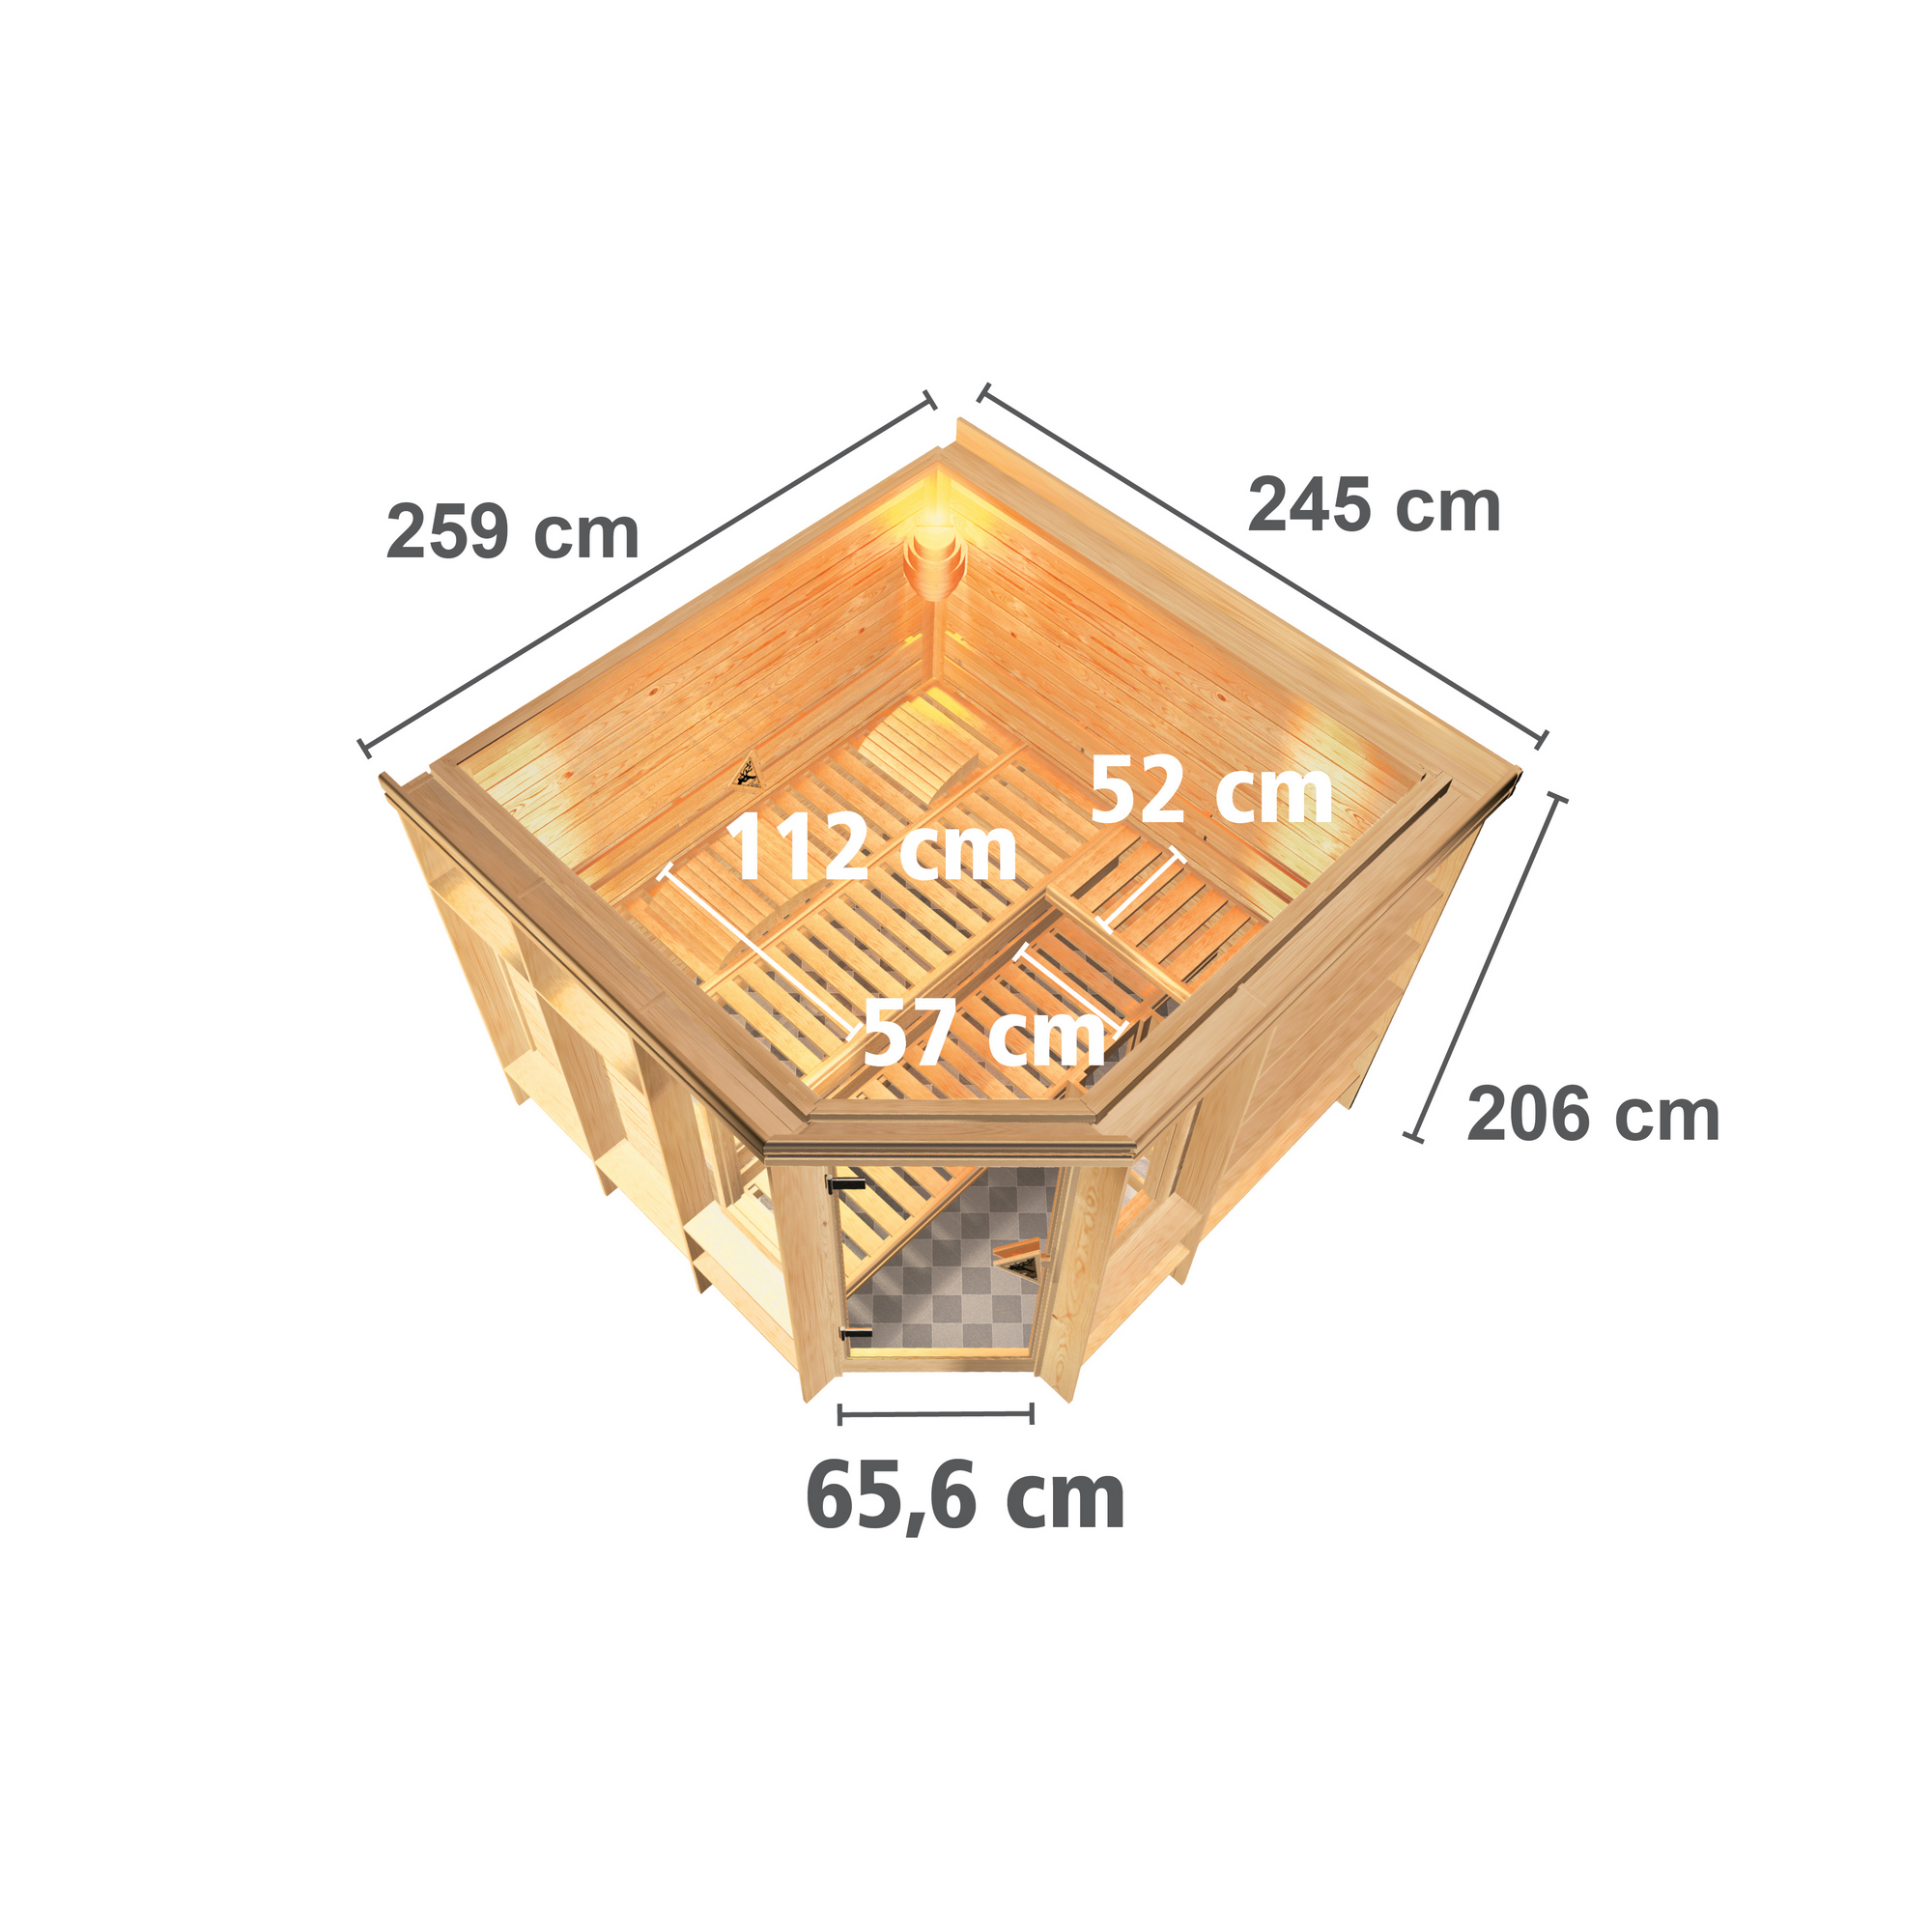 Massivholzsauna 'Vega' naturbelassen mit bronzierter Tür 9 kW Ofen integrierte Steuerung 259 x 245 x 206 cm + product picture